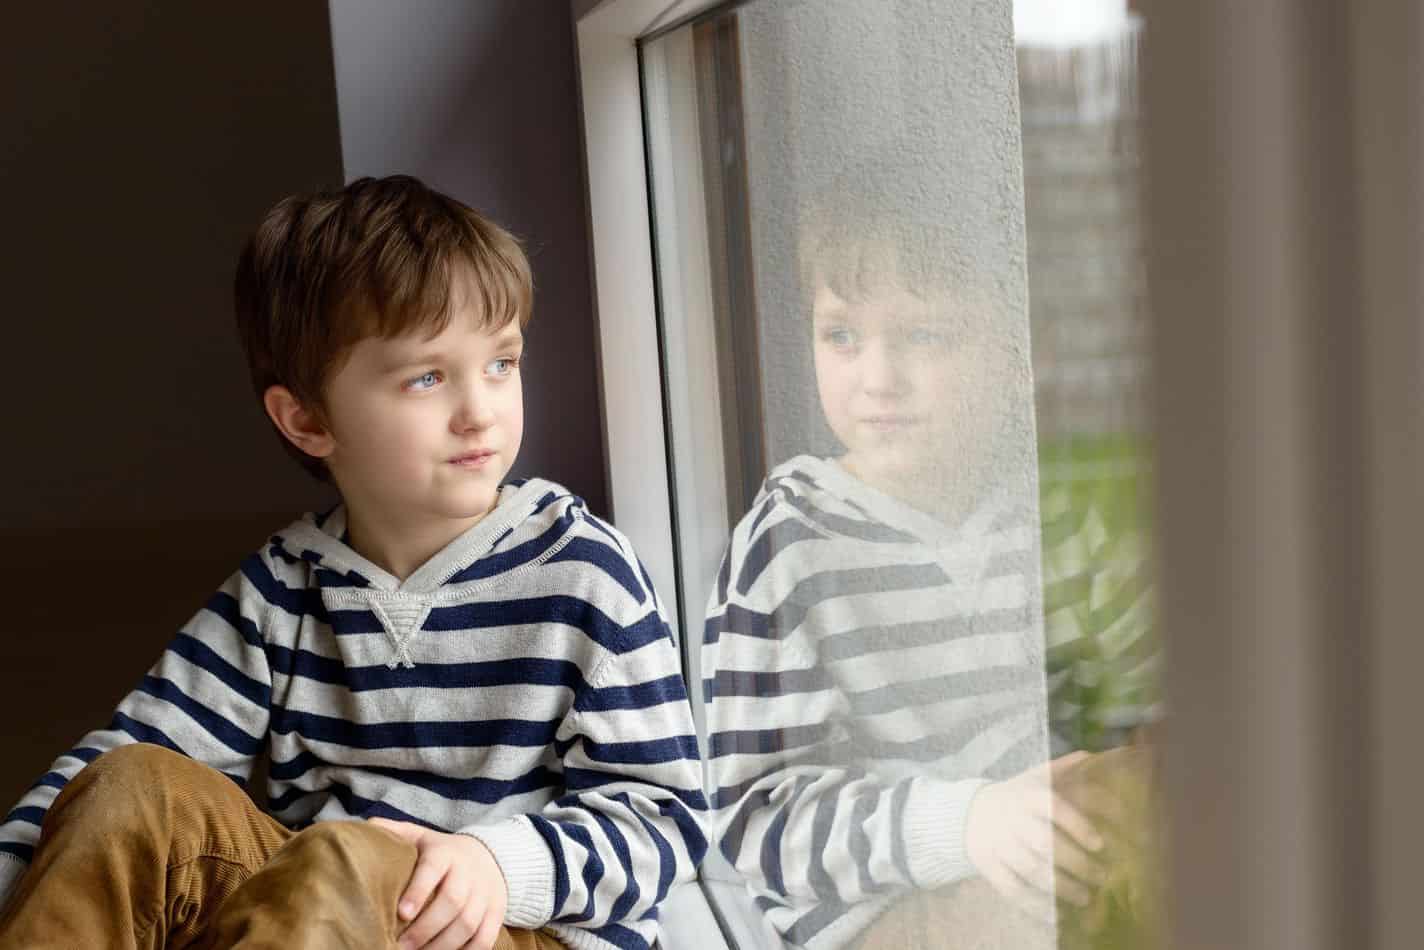 Es seguro y legal para un niño de 7 años quedarse solo en casa